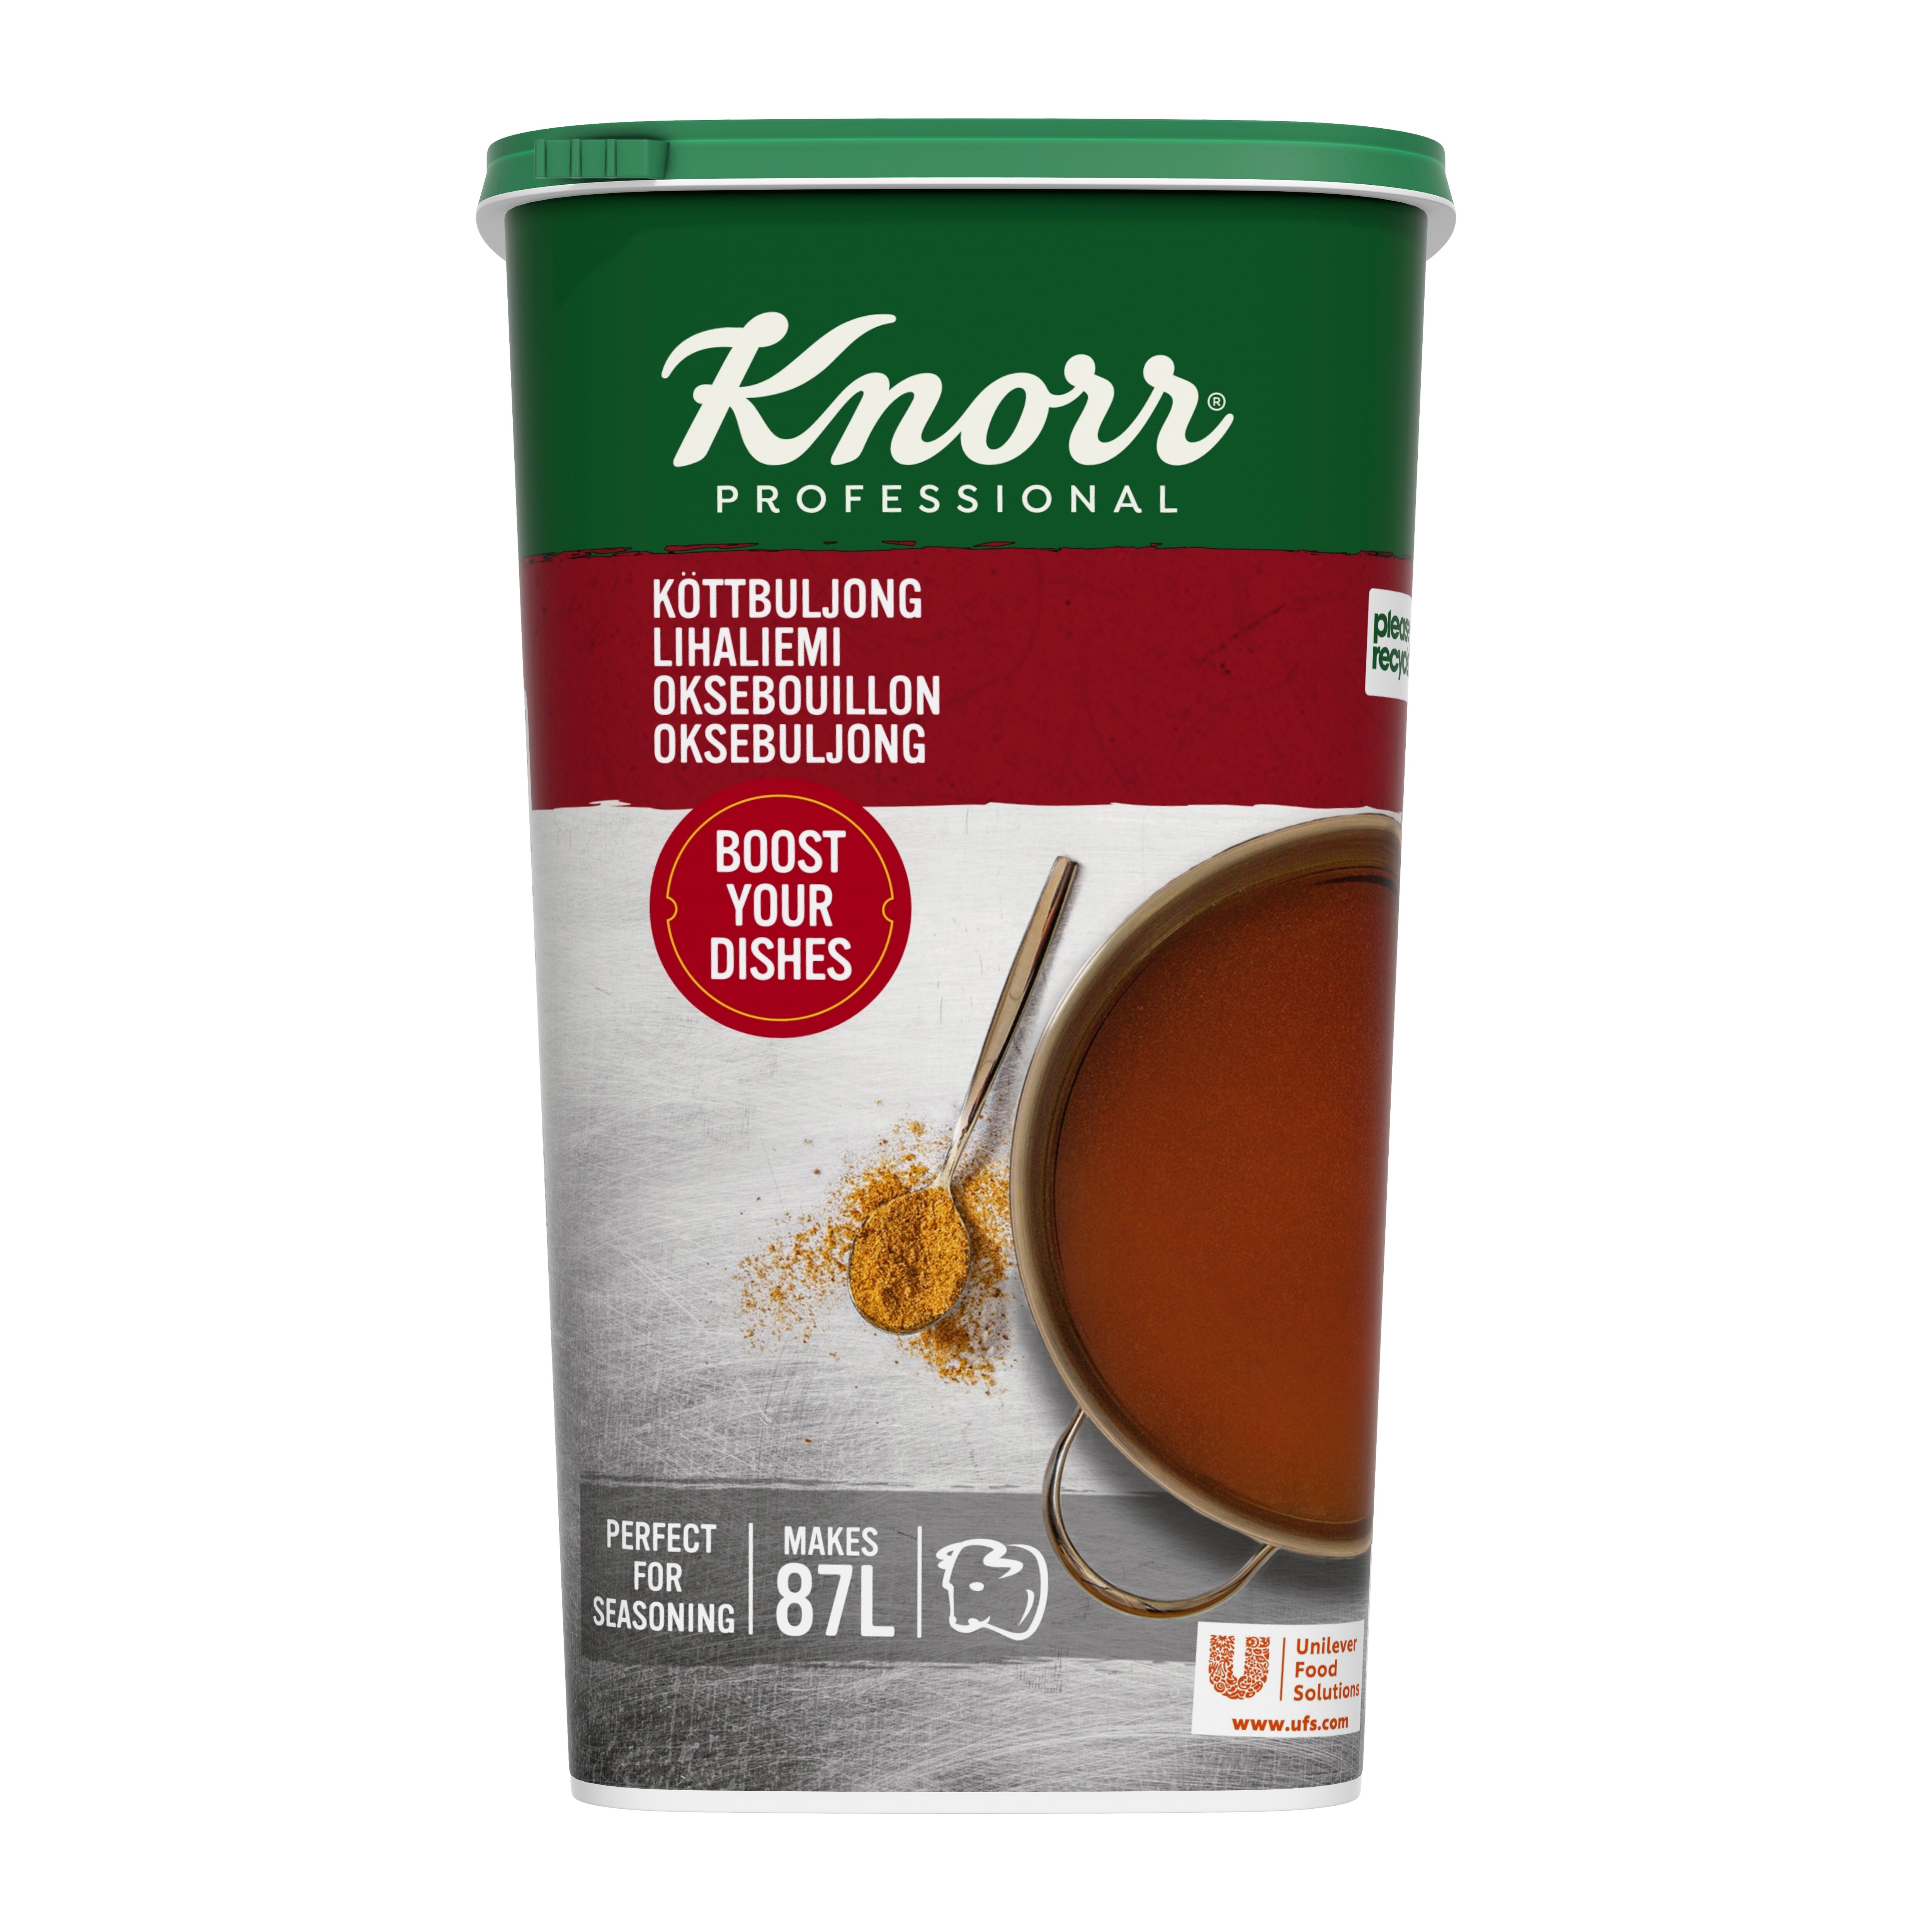 Knorr Lihaliemi 1,3 kg / 87 L